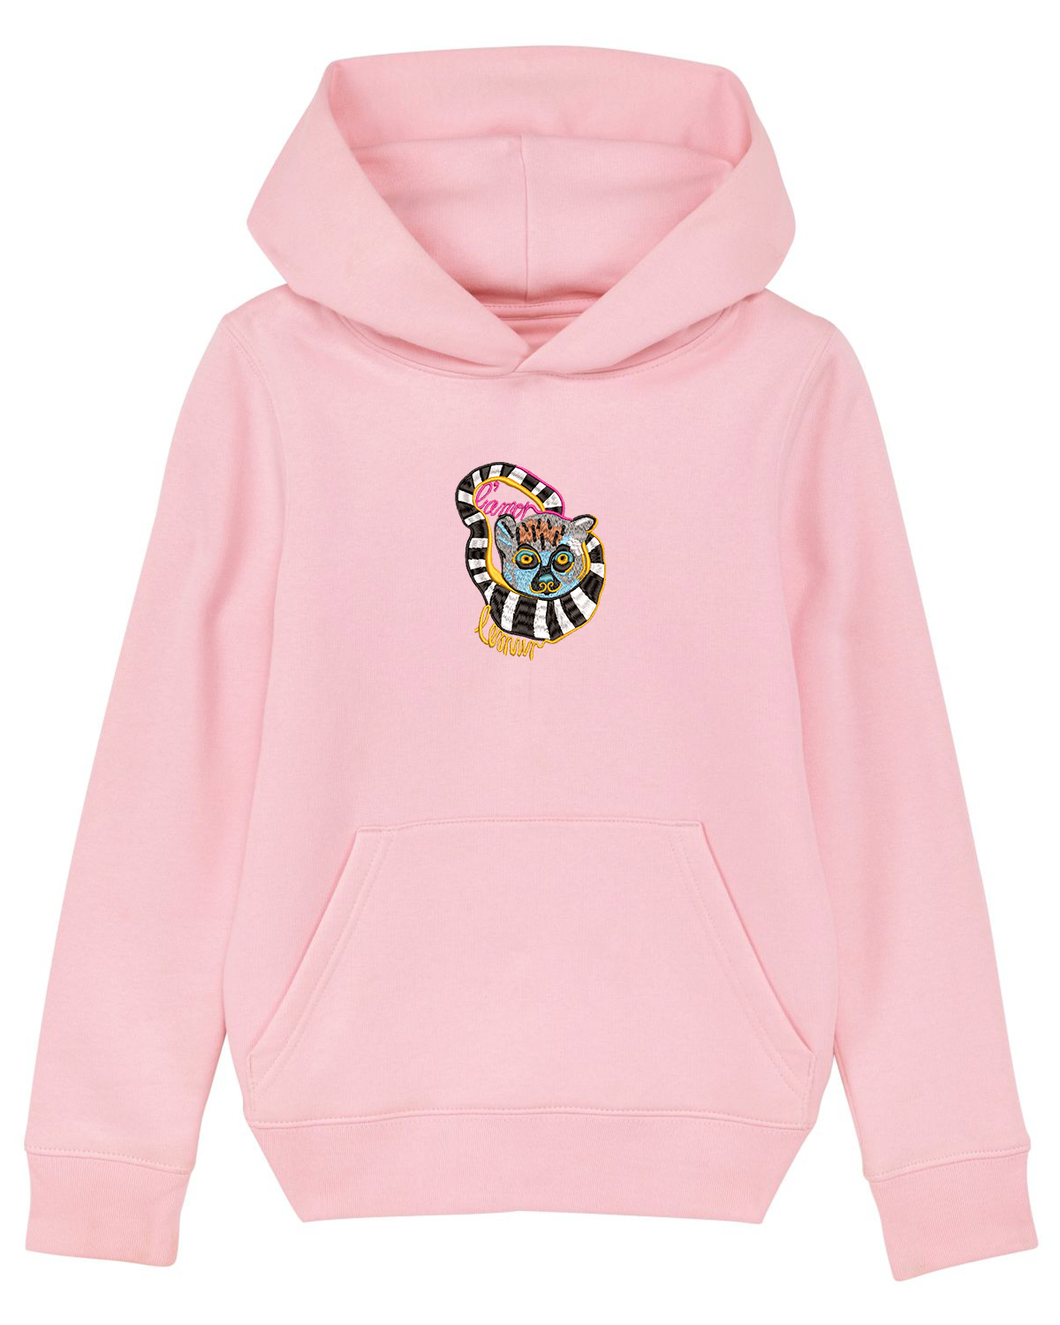 Lemur L'amor - Embroidered UNISEX KIDS hoodie